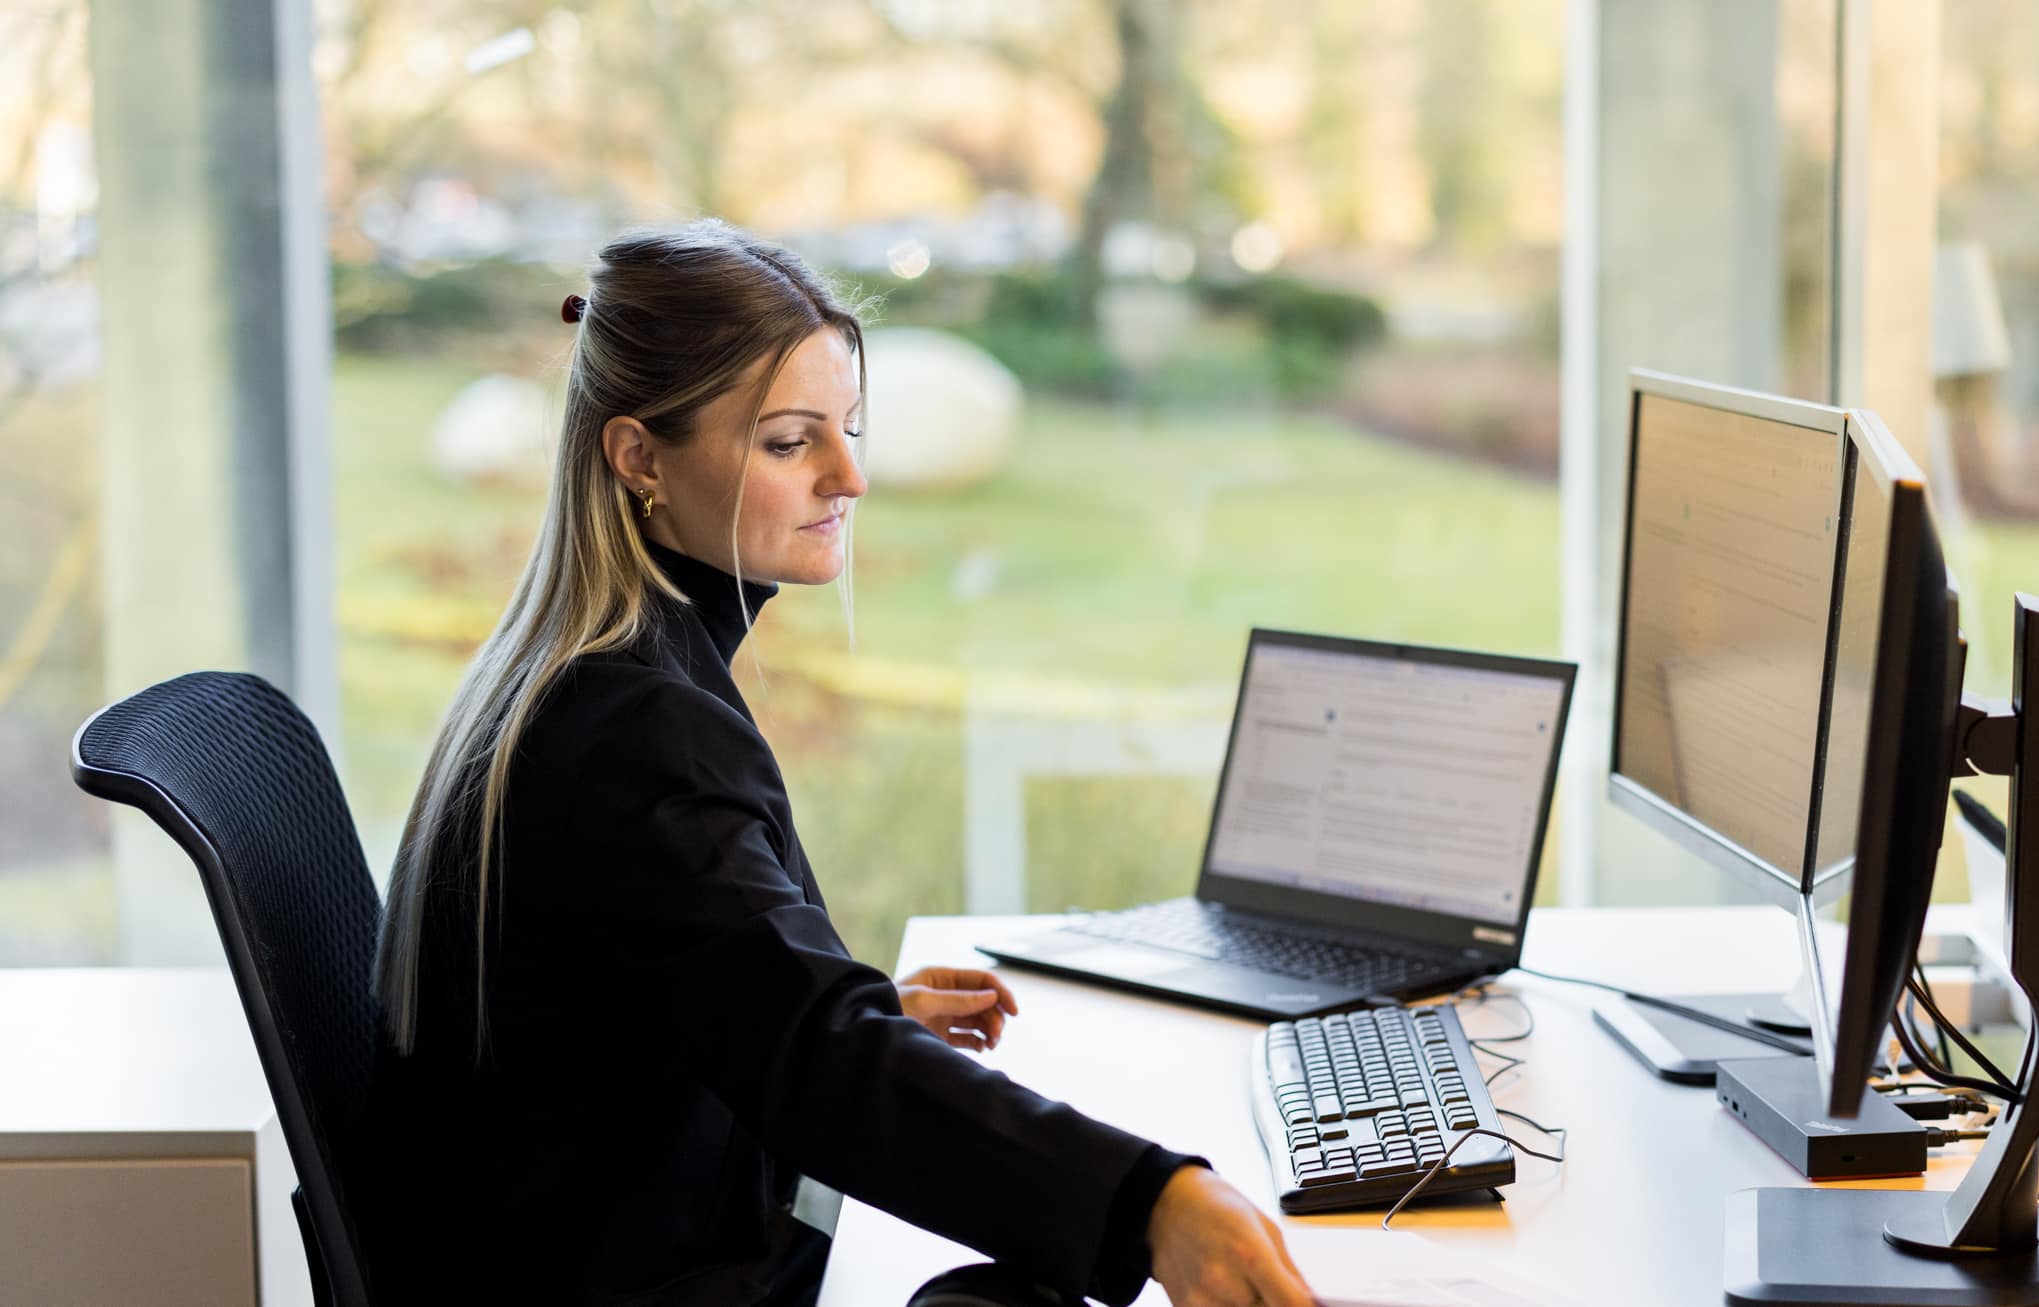 Een vrouwelijke collega van Van Havermaet zit achter haar bureau in een moderne kantoorsetting. Ze draagt een zwarte coltrui en heeft blonde haren. Voor haar staan twee schermen en een laptop.